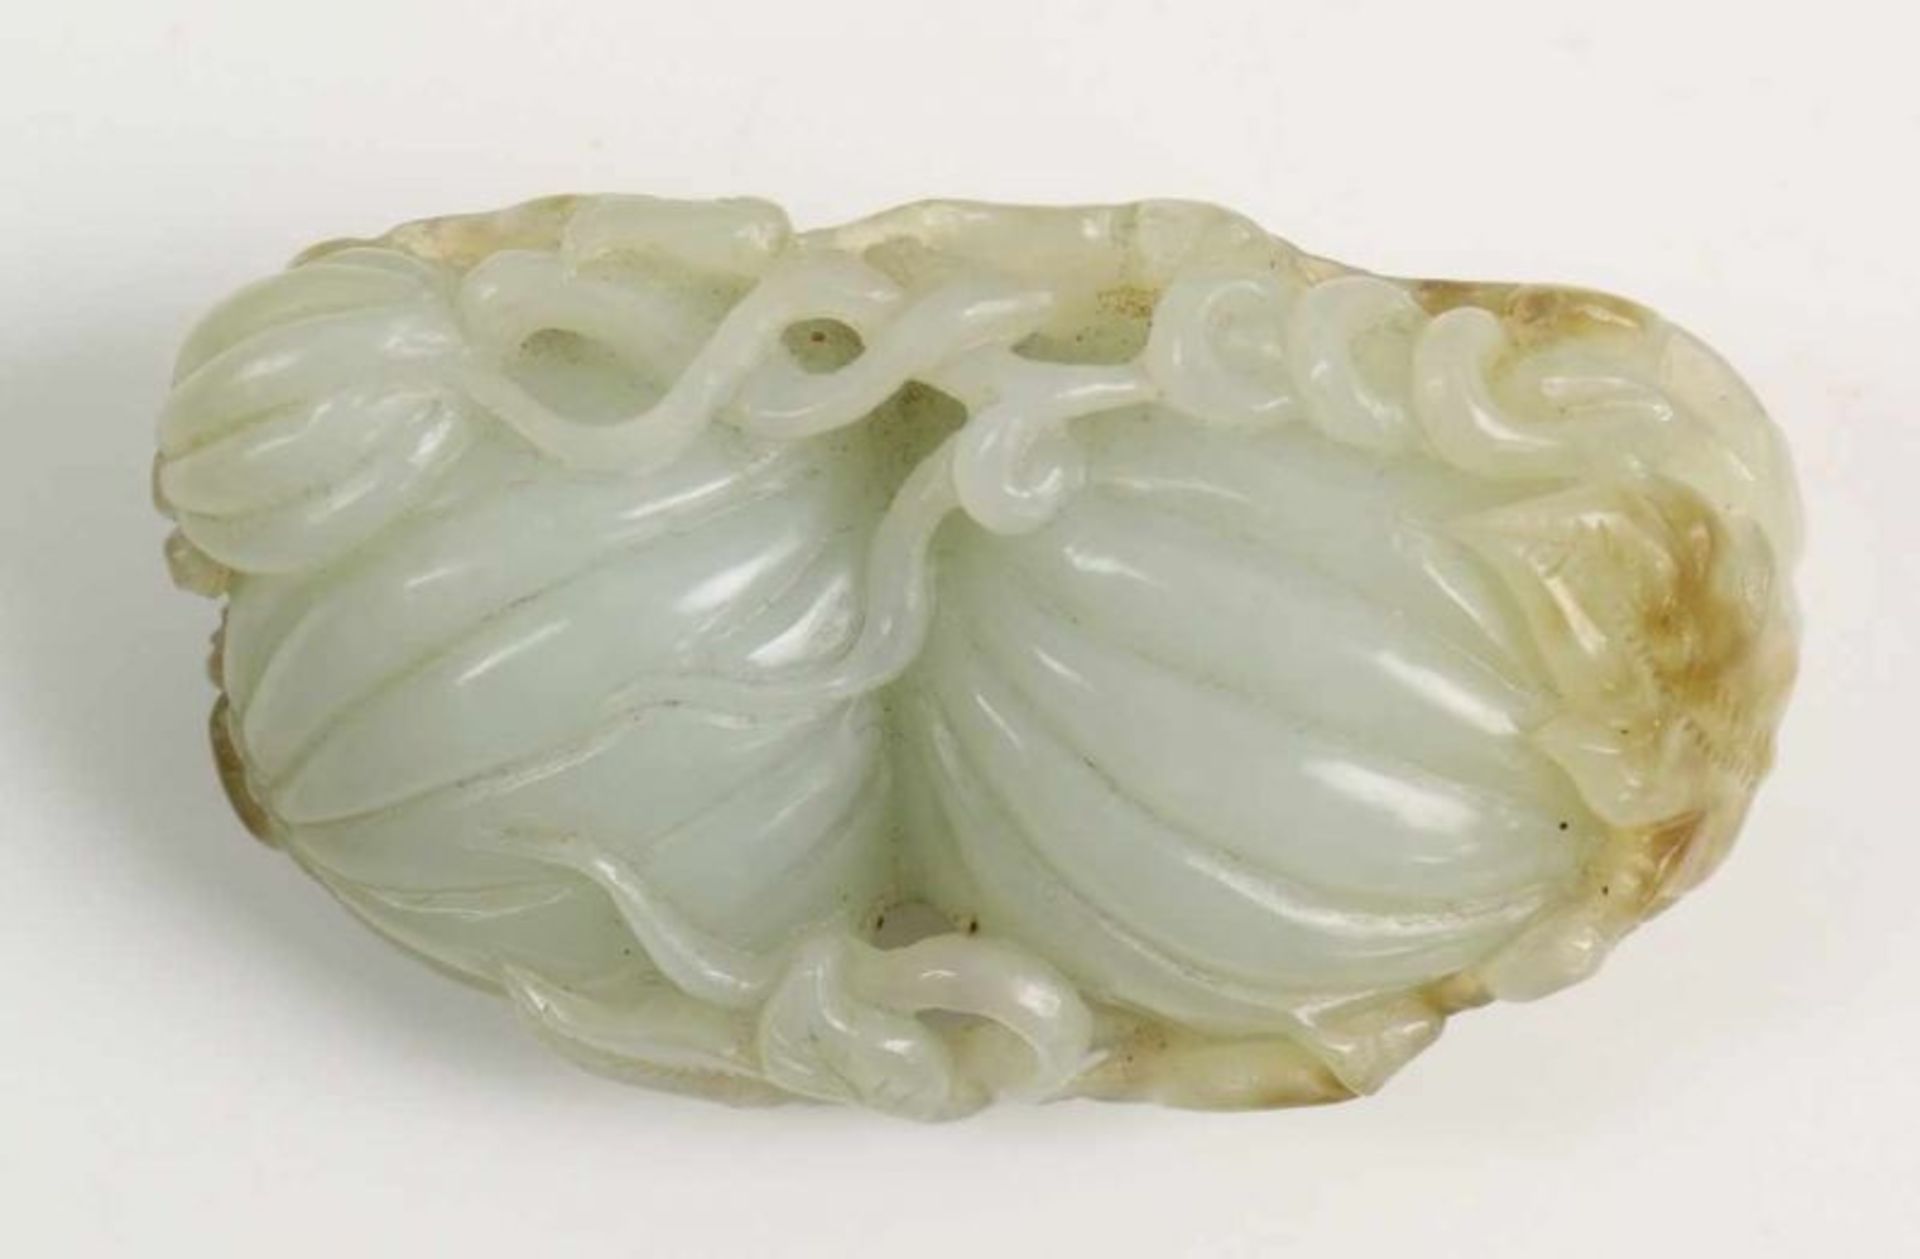 China, groen deel ajour jade snijwerk in vorm van vingercitroen 7 x 4,5 cm. [1] - Bild 2 aus 3